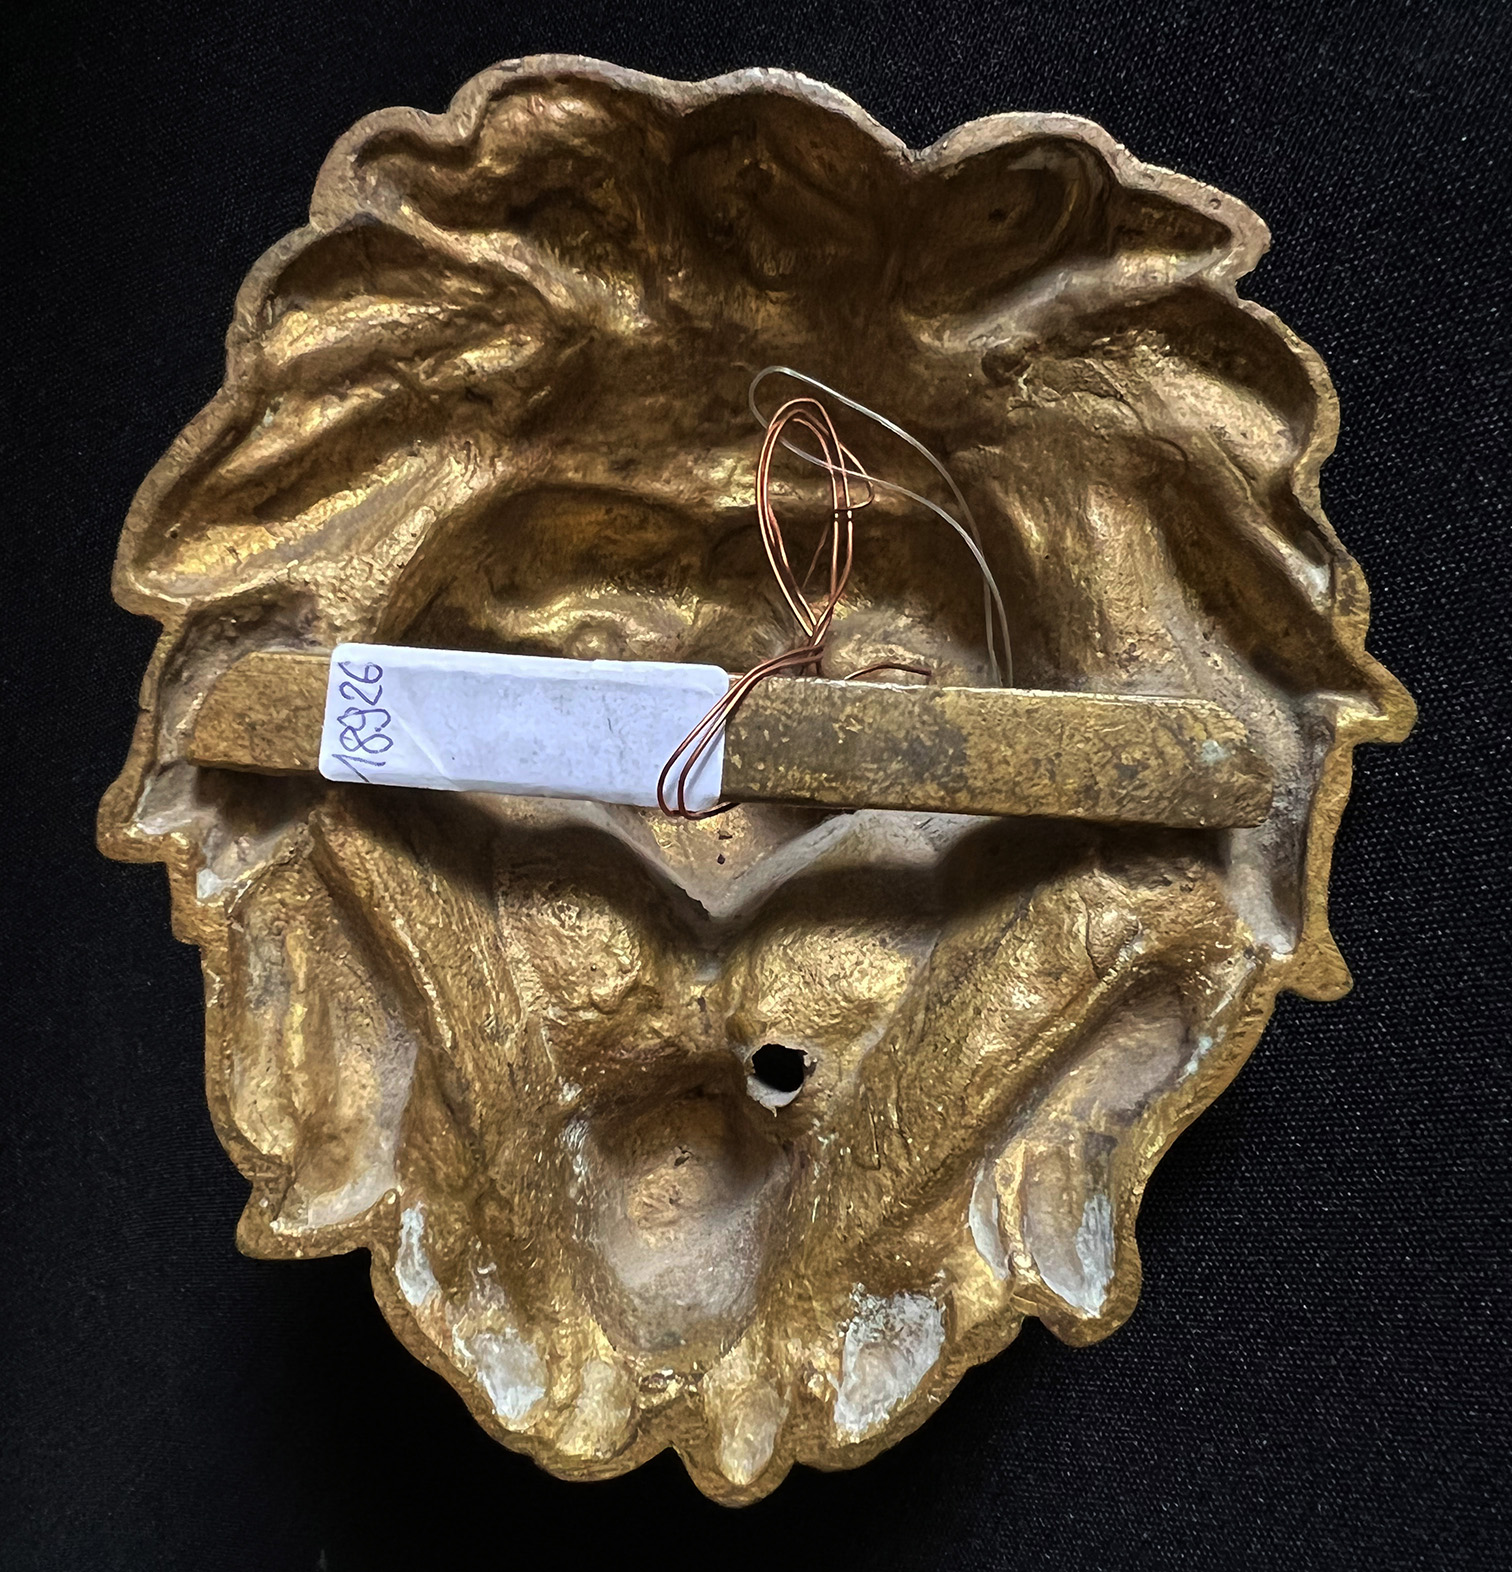 Löwenkopf, Historismus, 19. Jh., wohl als Türknauf verwendet mit Ring durch das Maul, 14 x 12 cm - Image 2 of 4